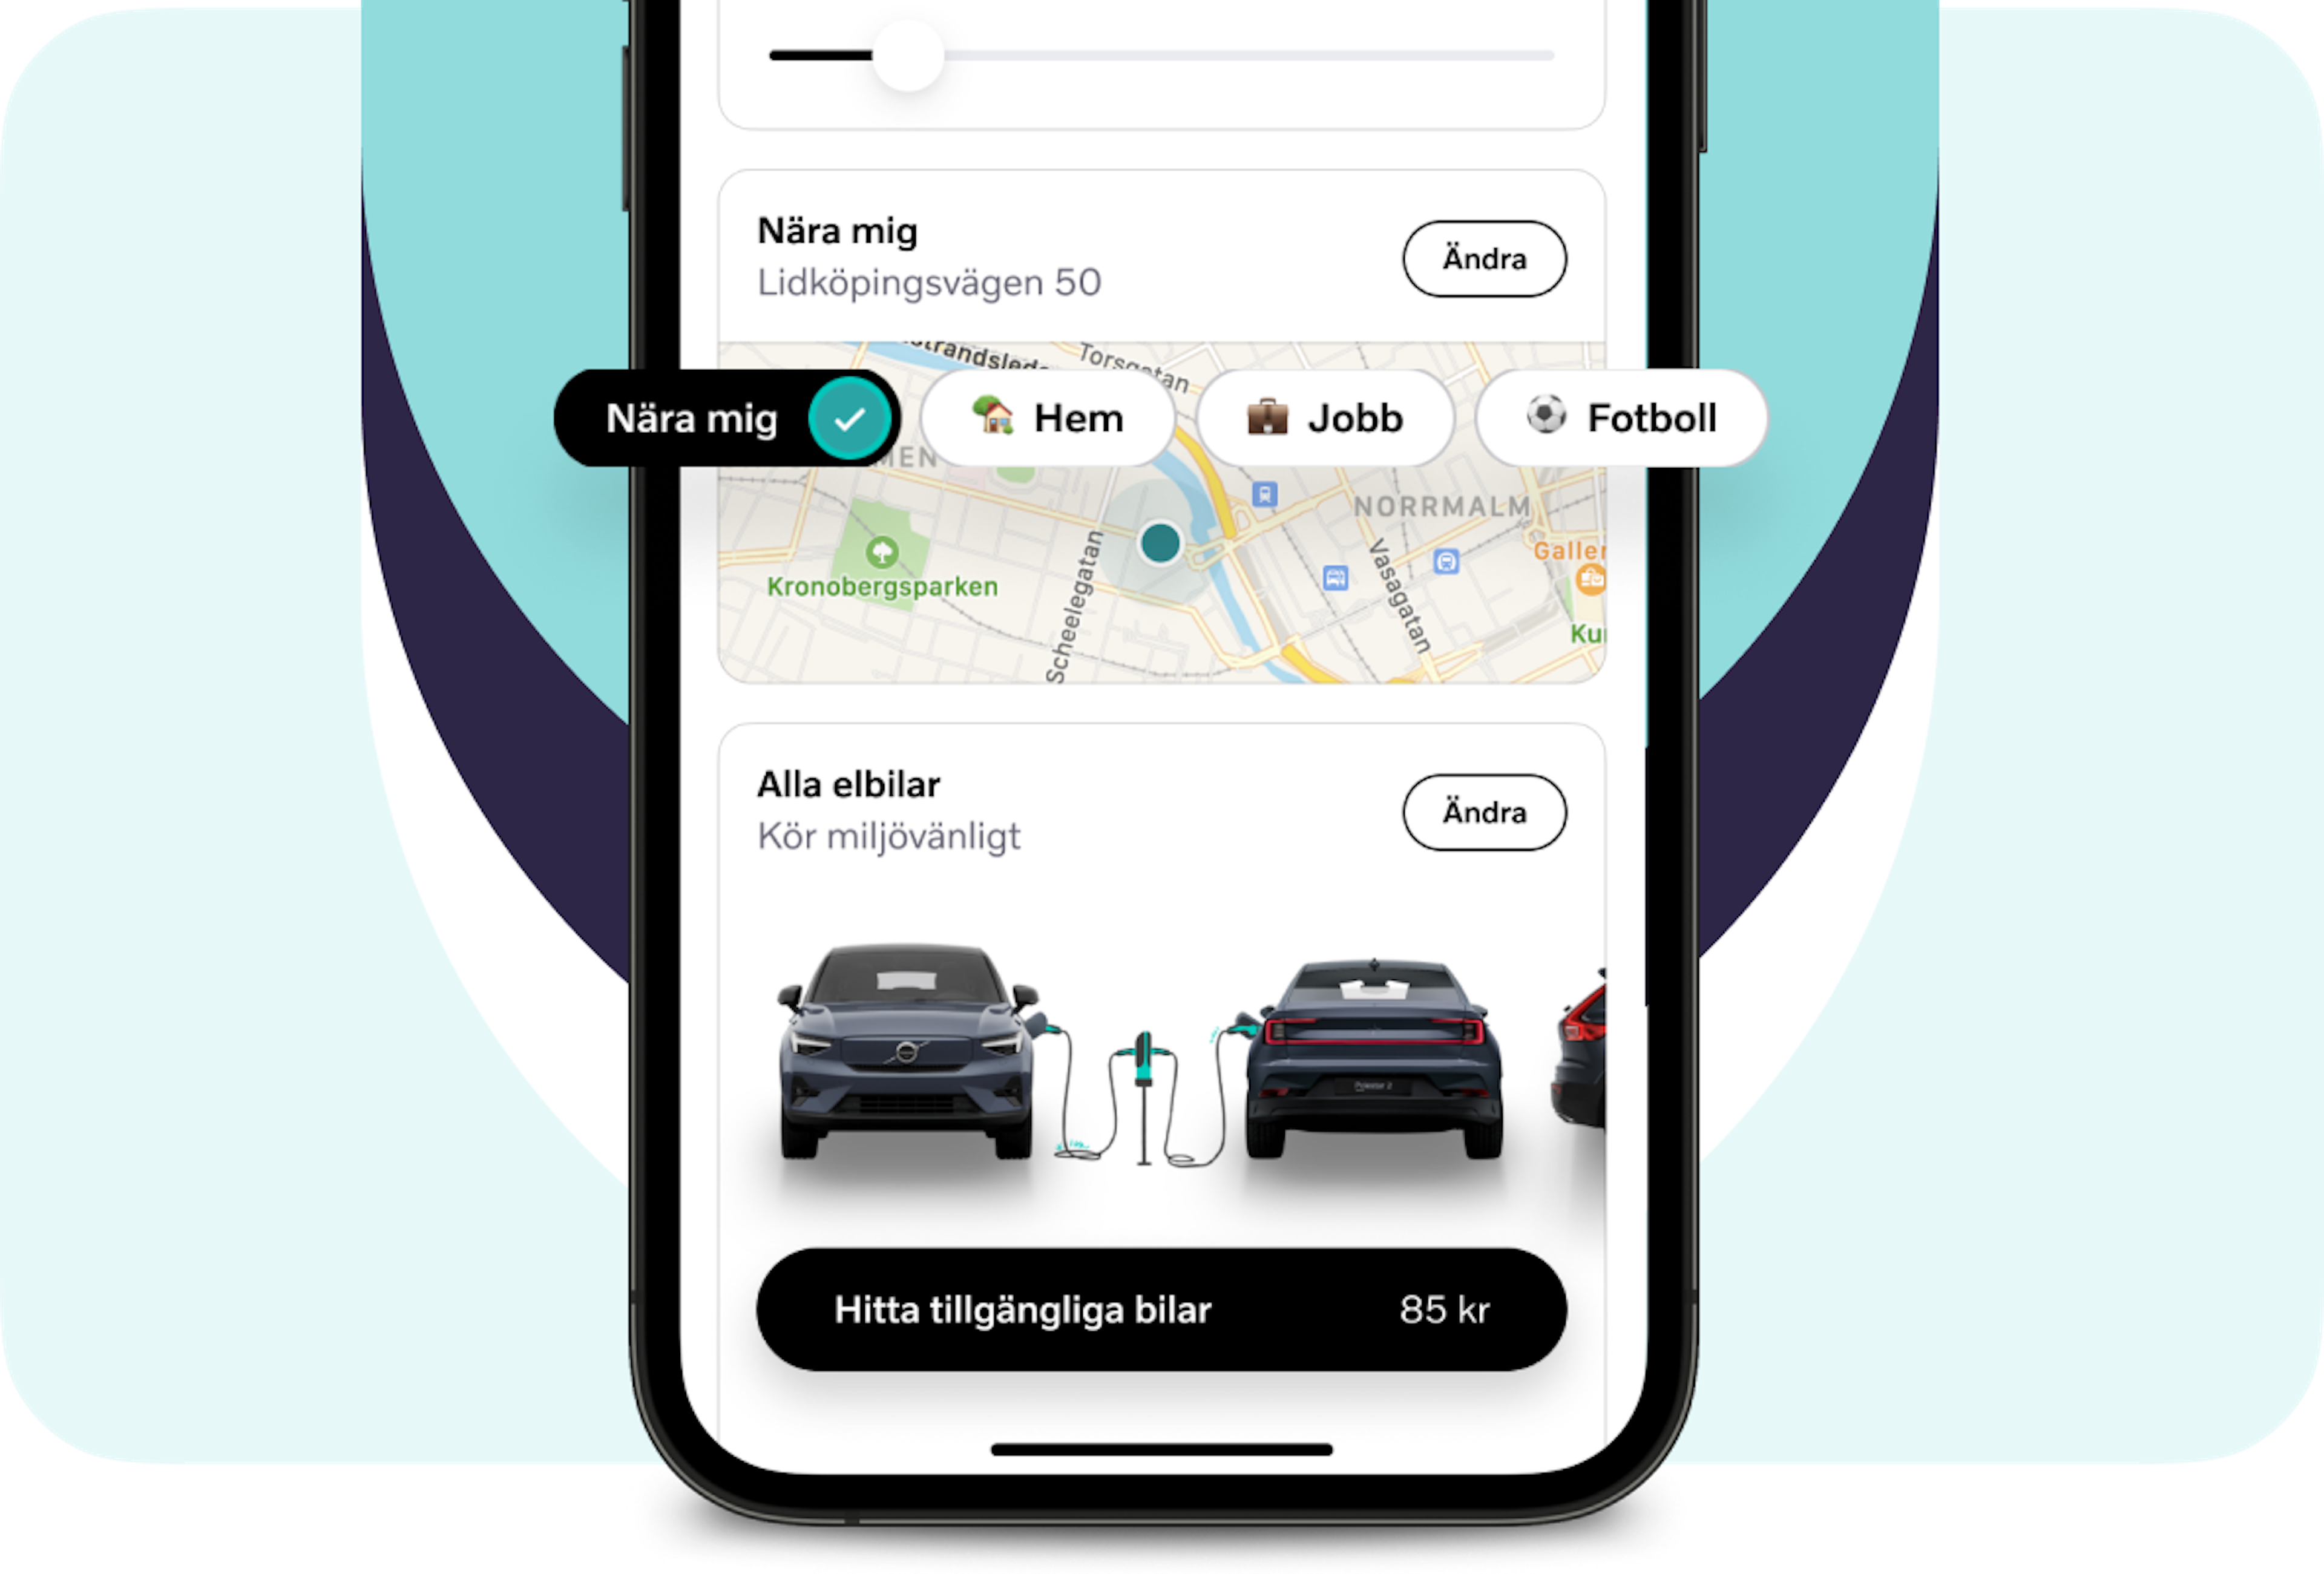 Volvo On Demand-appen visar en karta med en markerad position märkt "Nära mig" och adressen Lidköpingsvägen 50